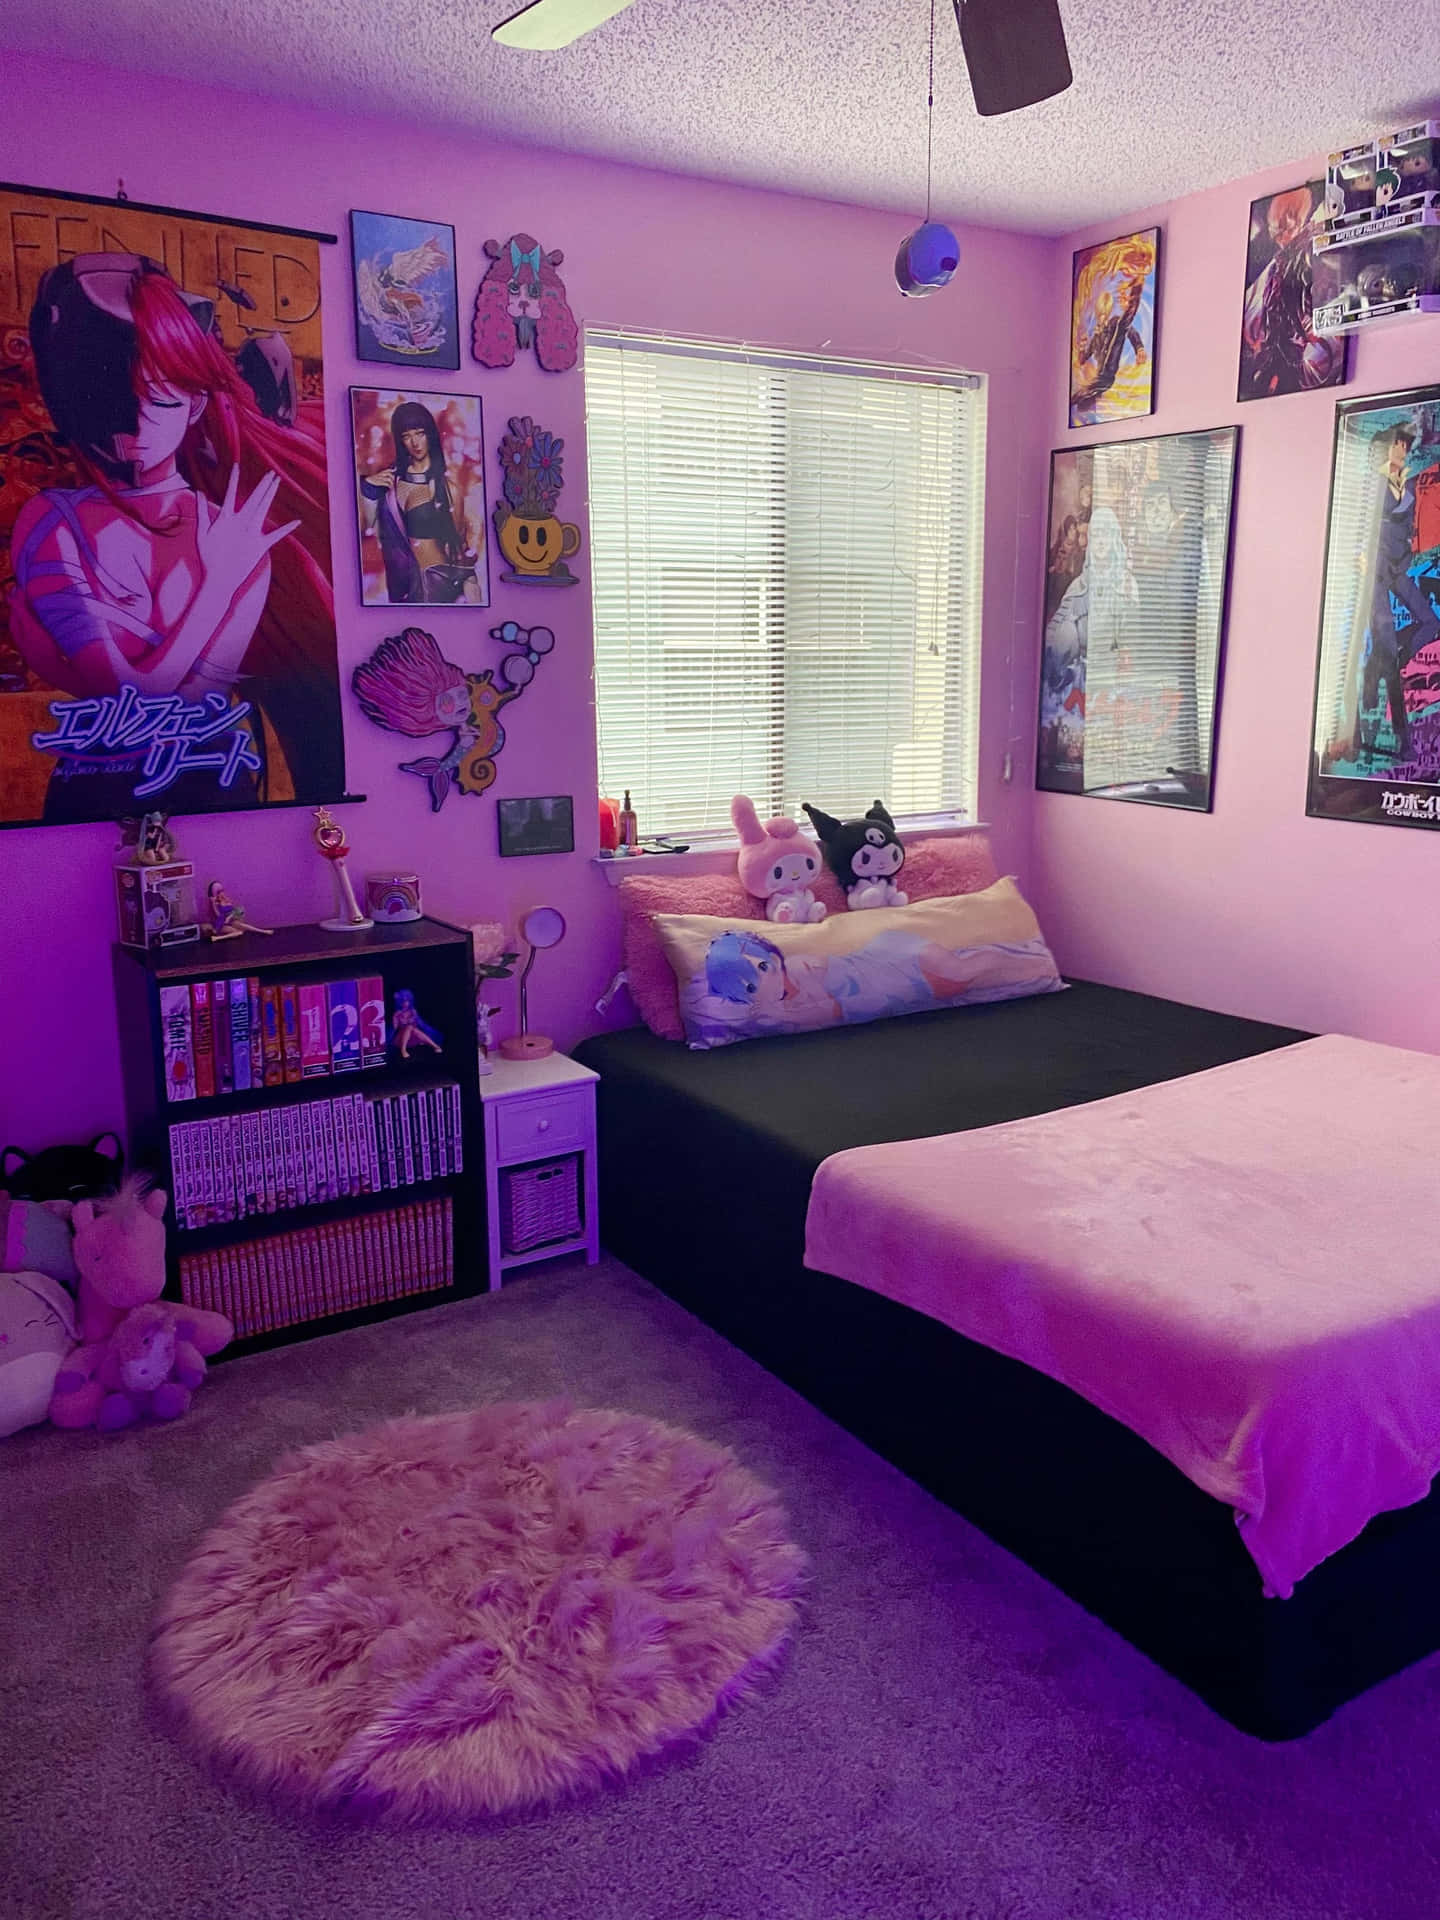 Caption: A Cozy and Vibrant Kawaii Room Wallpaper